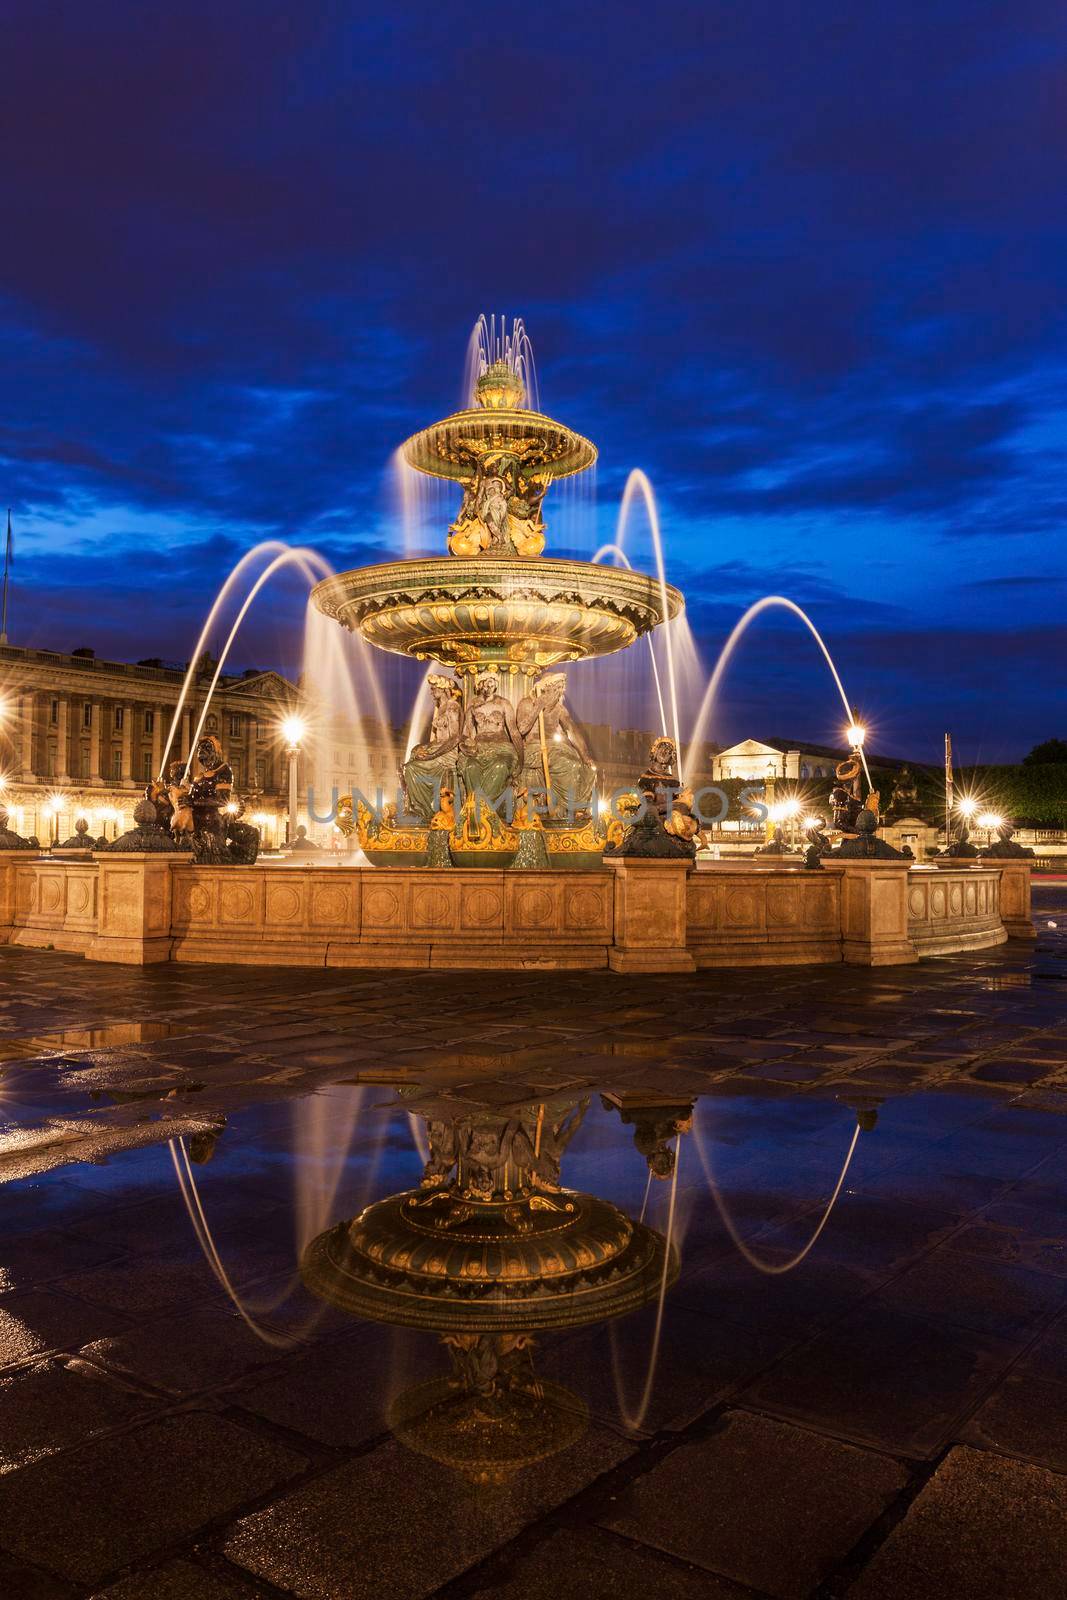 Fontaine des Fleuves on Place de la Concorde in Paris. Paris, France.